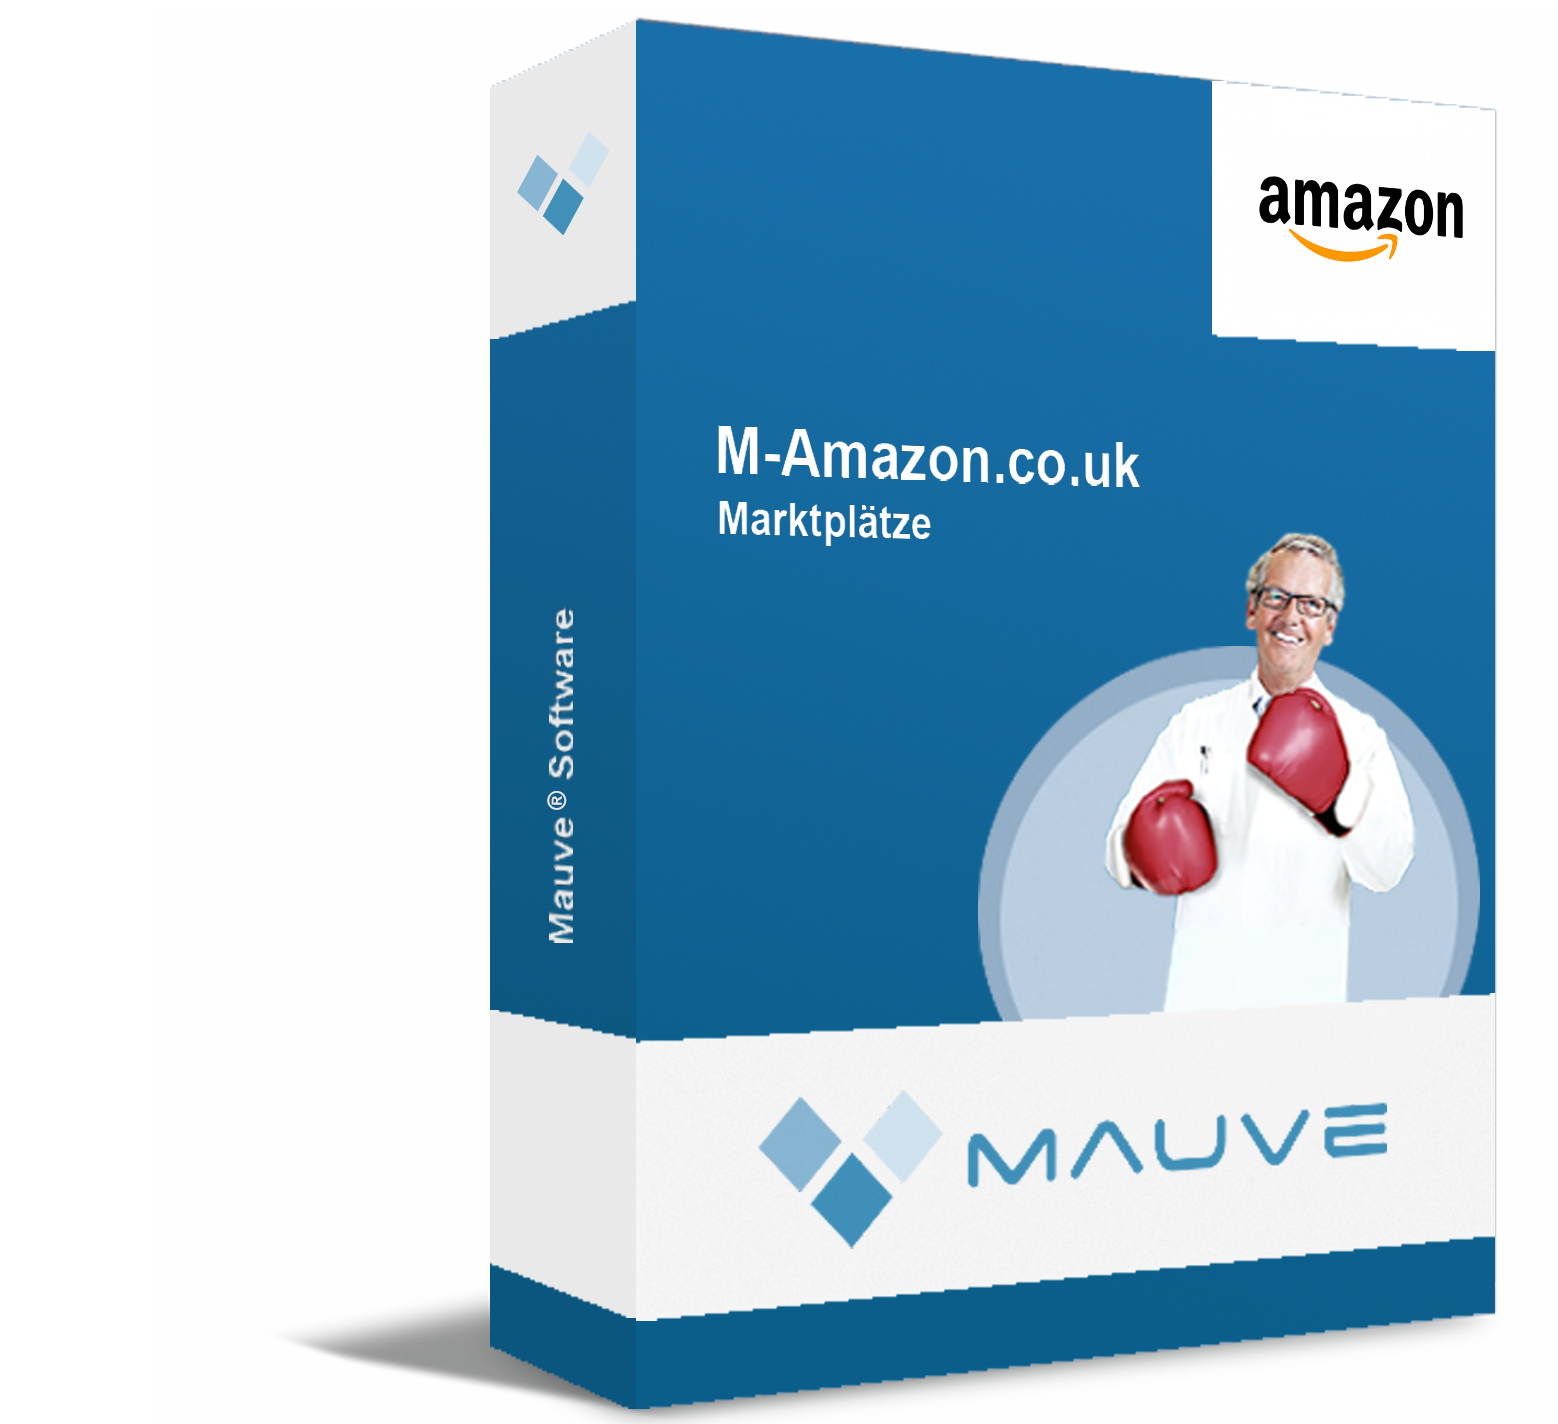 M-Amazon.co.uk